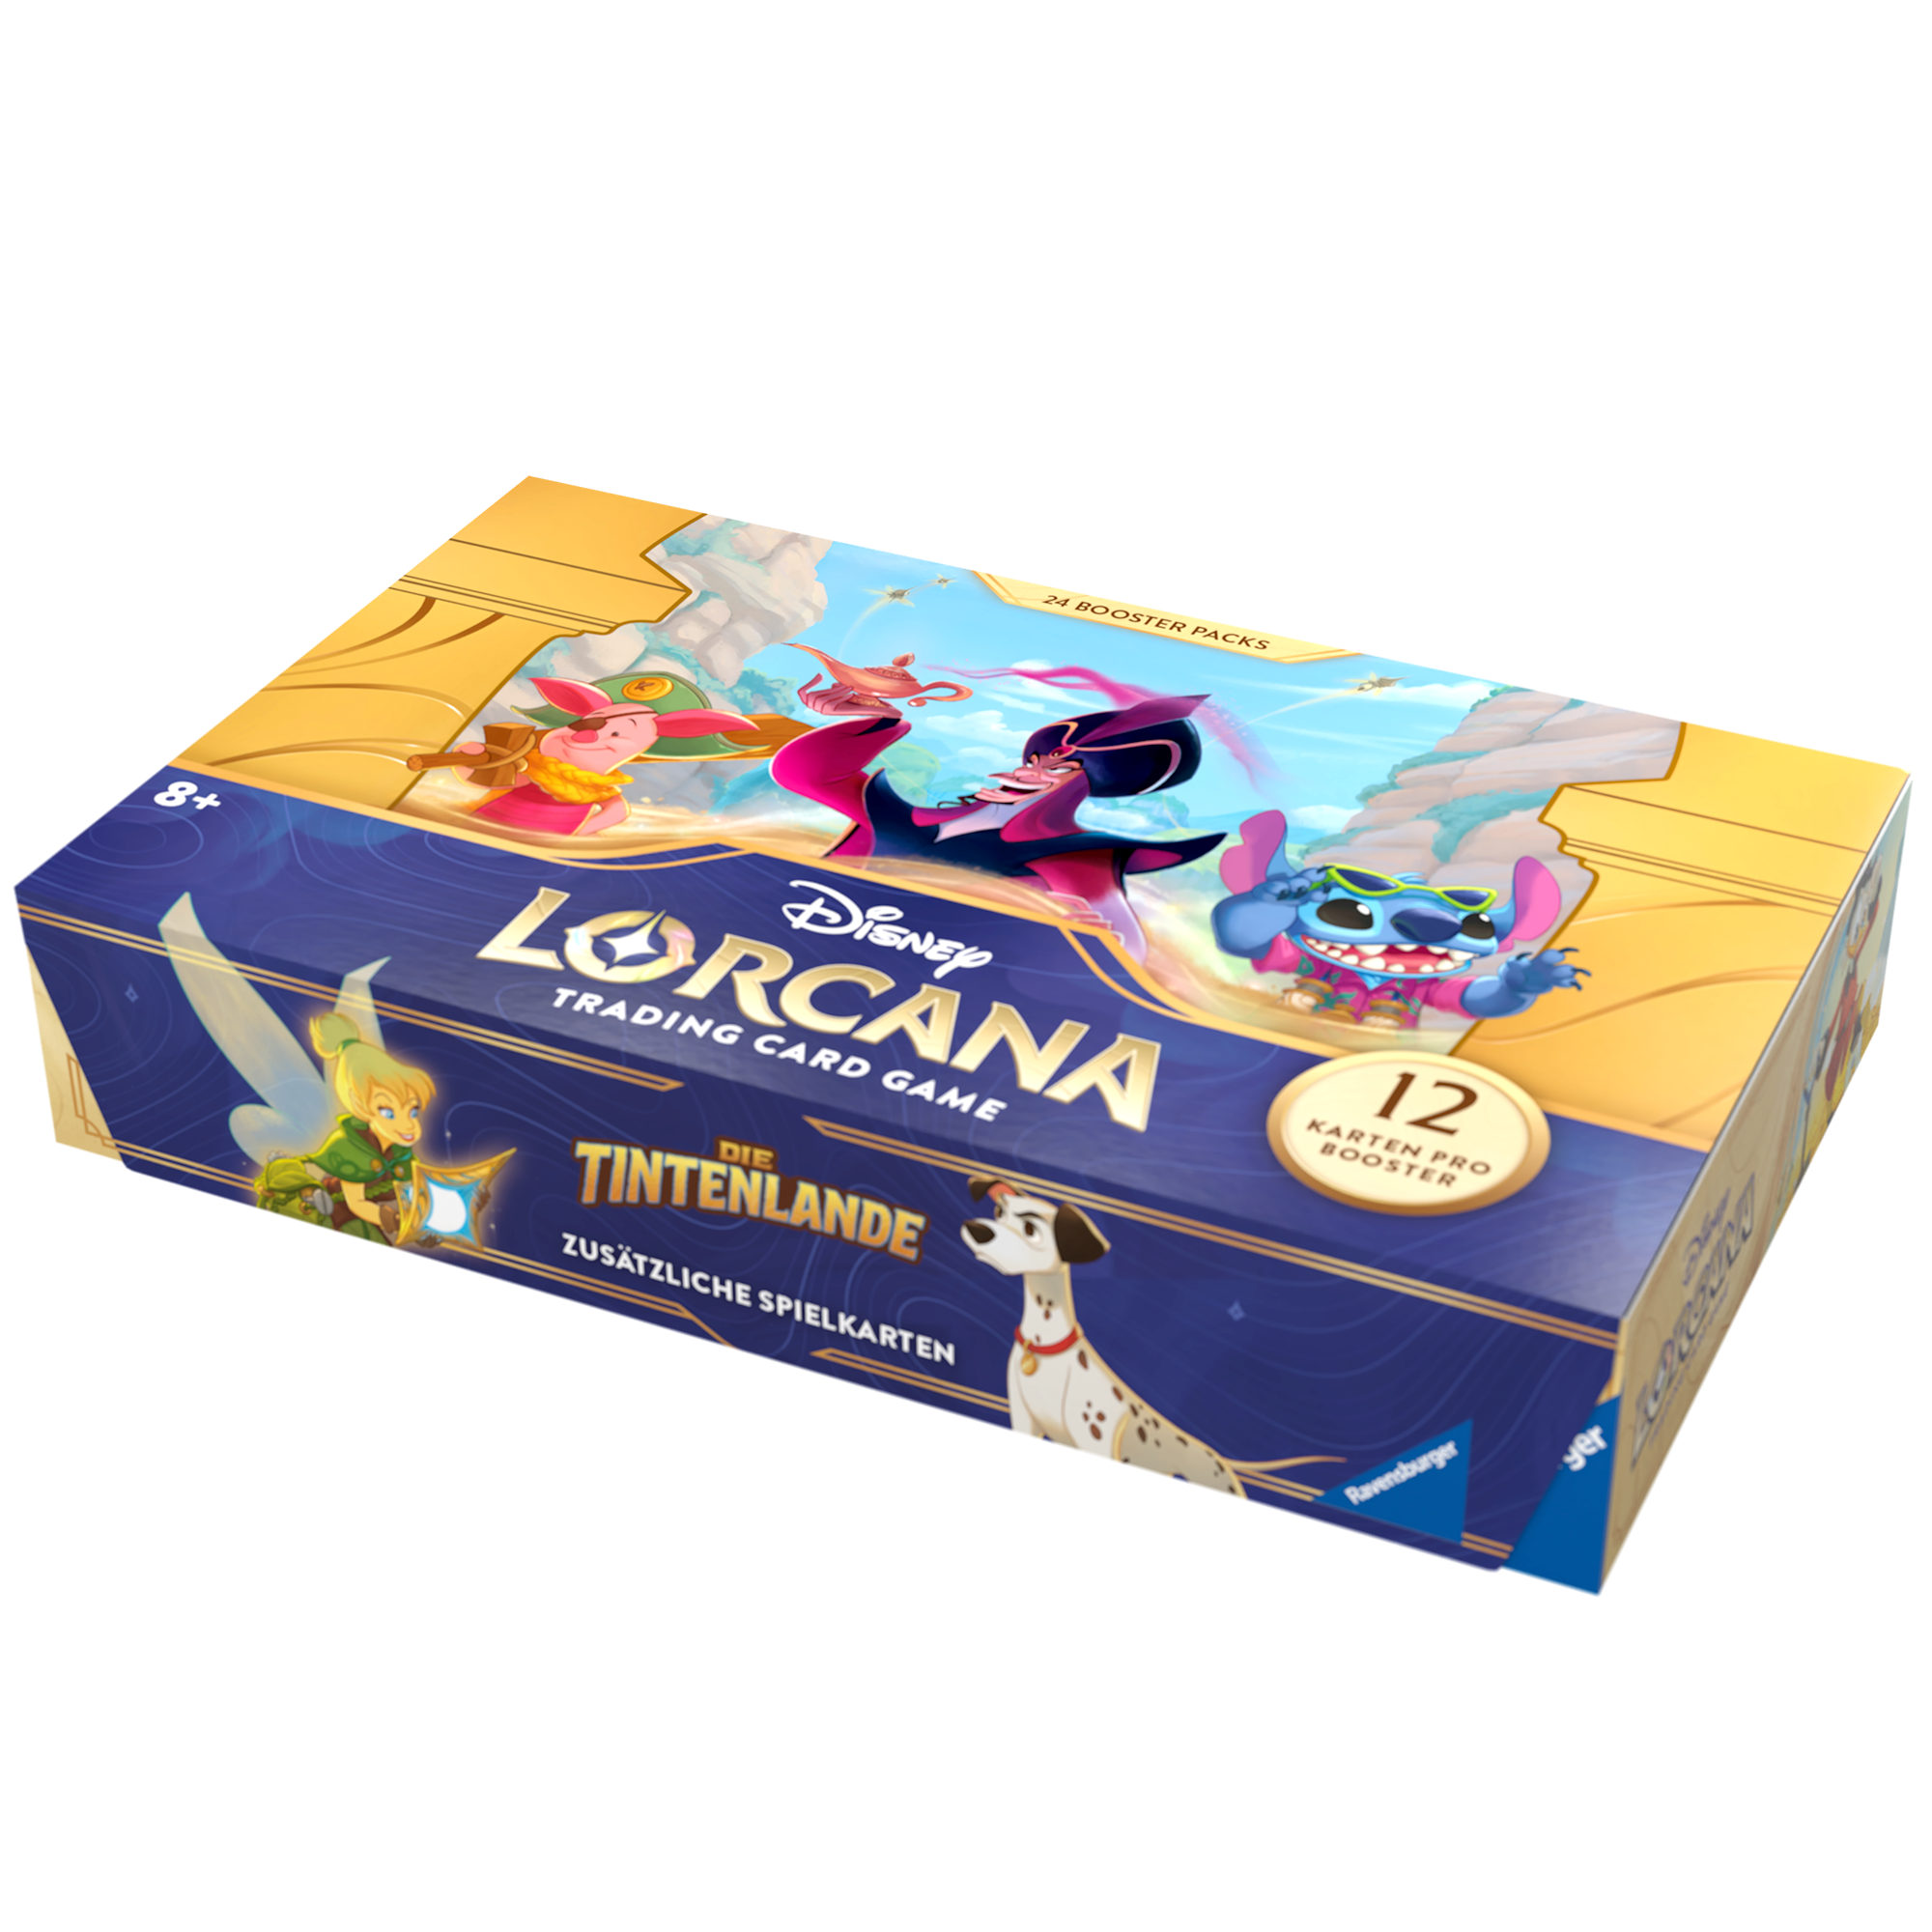 Lorcana: Die Tintenlande - Display mit 24 Booster Packs (DE)